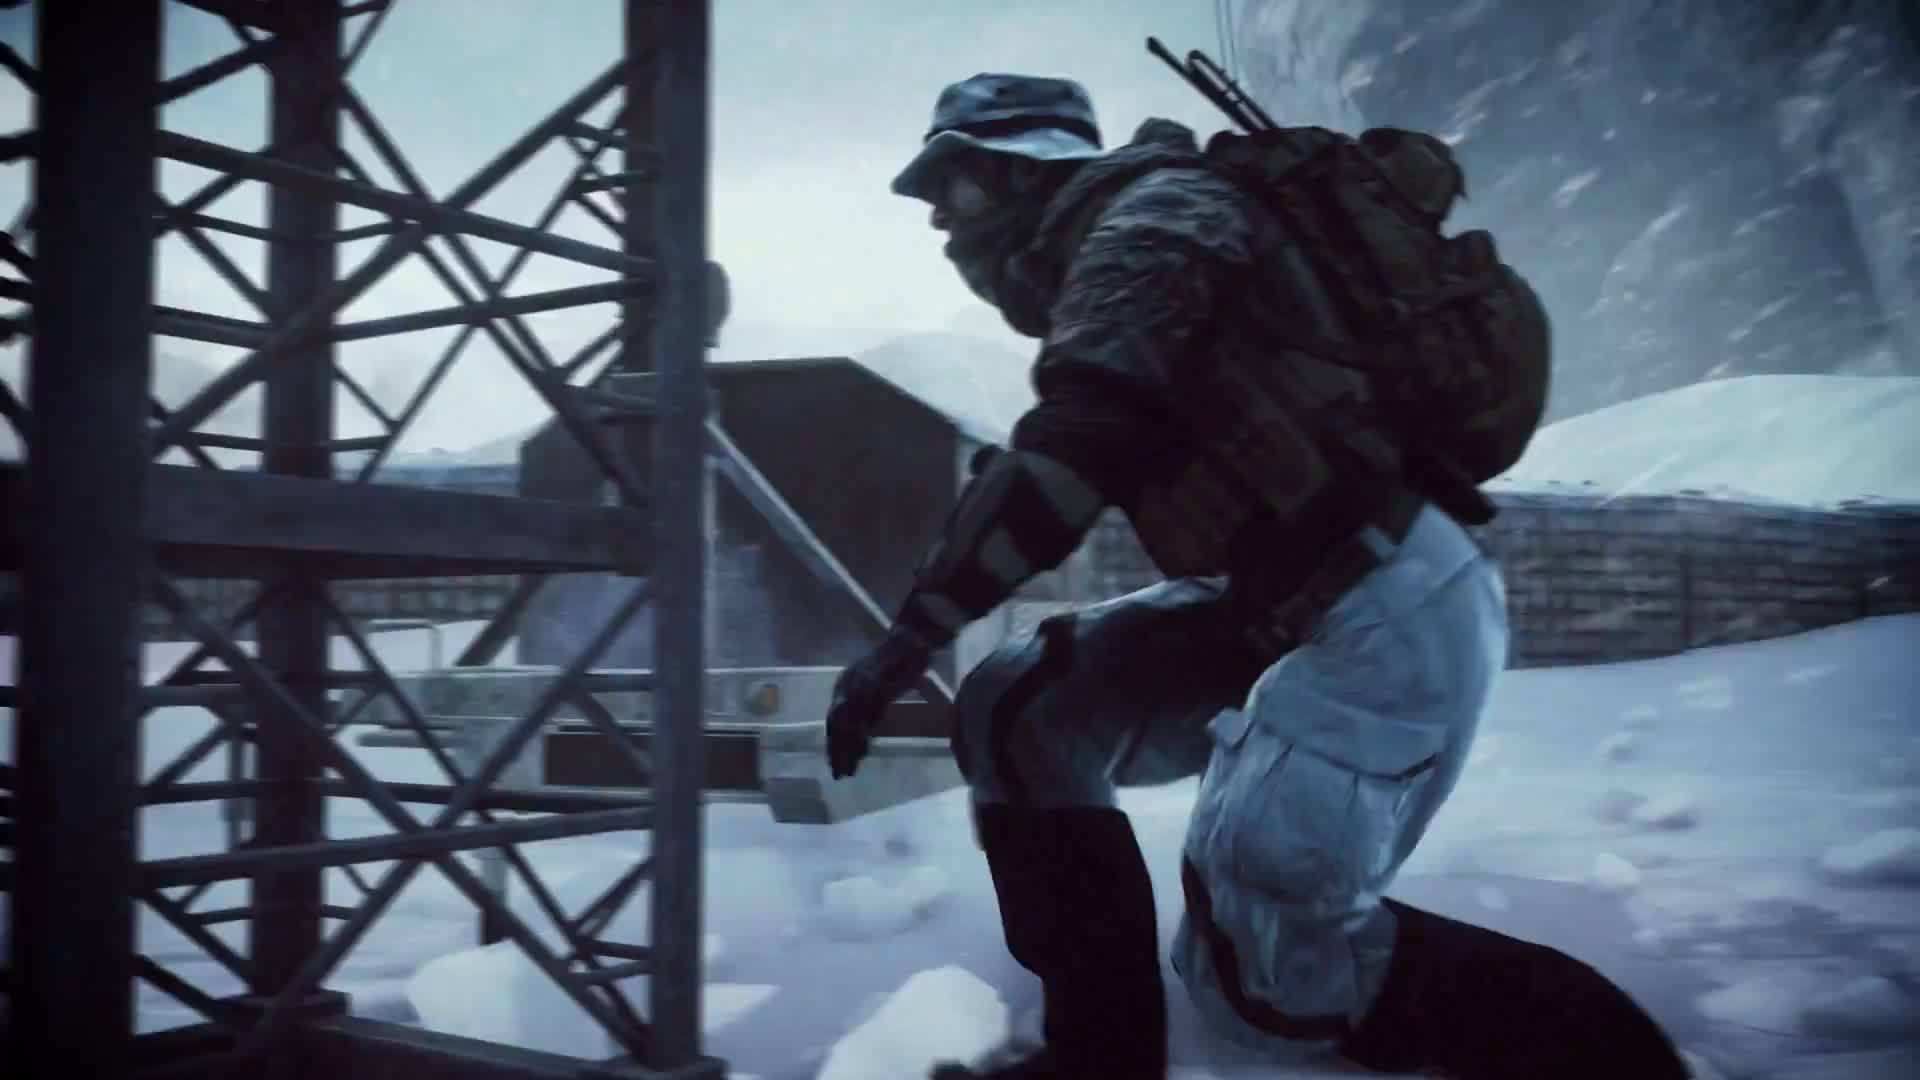 Battlefield 4 - Final Stand DLC Trailer